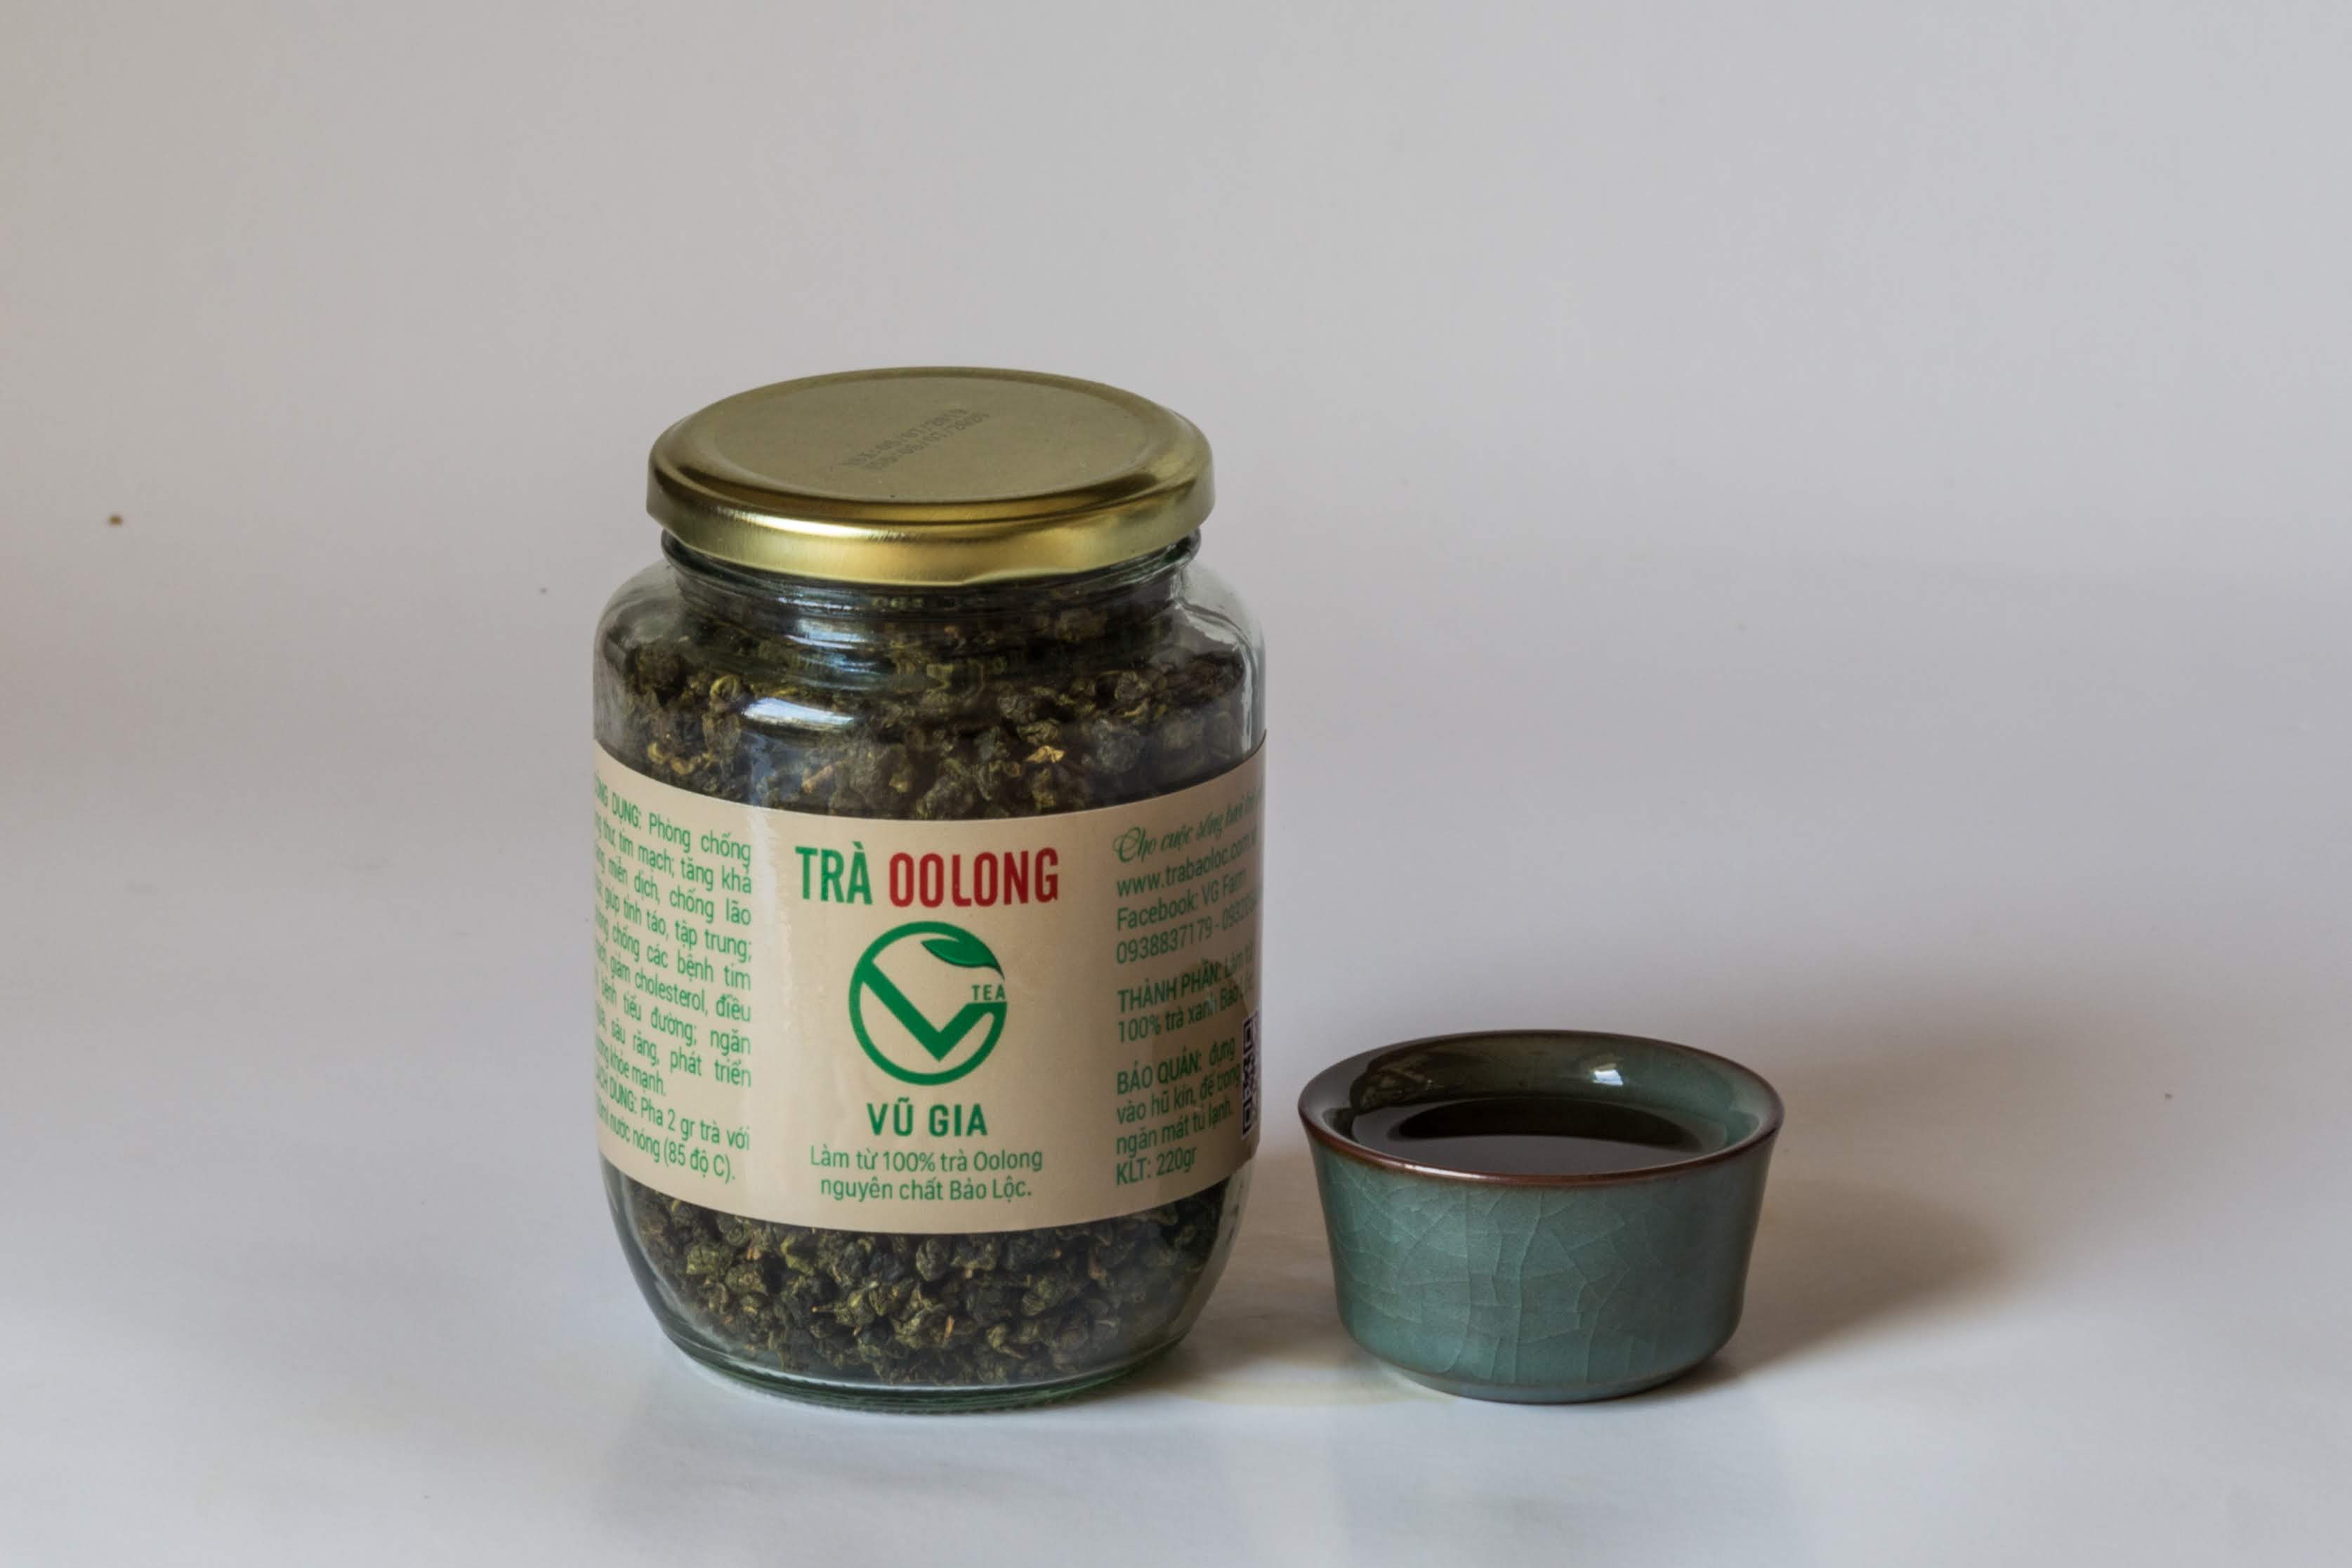 Trà Oolong Nguyên Chất Bảo Lộc Vũ Gia (85gr/hũ) - Nguyên liệu nấu trà sữa trân châu thơm ngon tại nhà, giảm cân an toàn